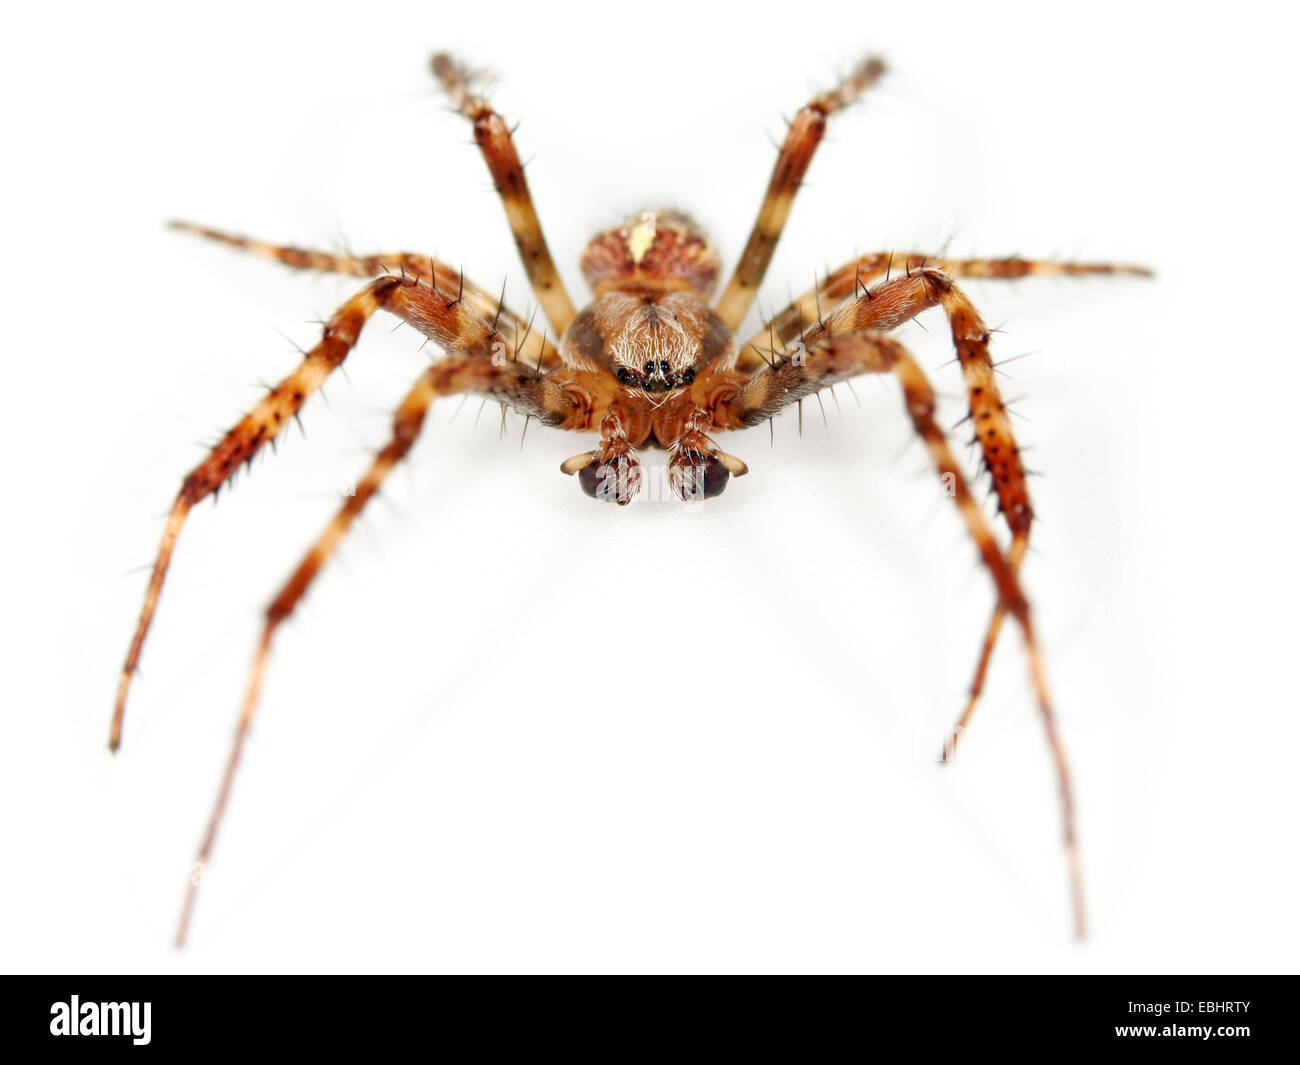 Una cruz o araña araña de jardín (Araneus quadratus) sobre fondo blanco. Cruz arañas son parte de la familia Araneidae - Orbweavers. Foto de stock